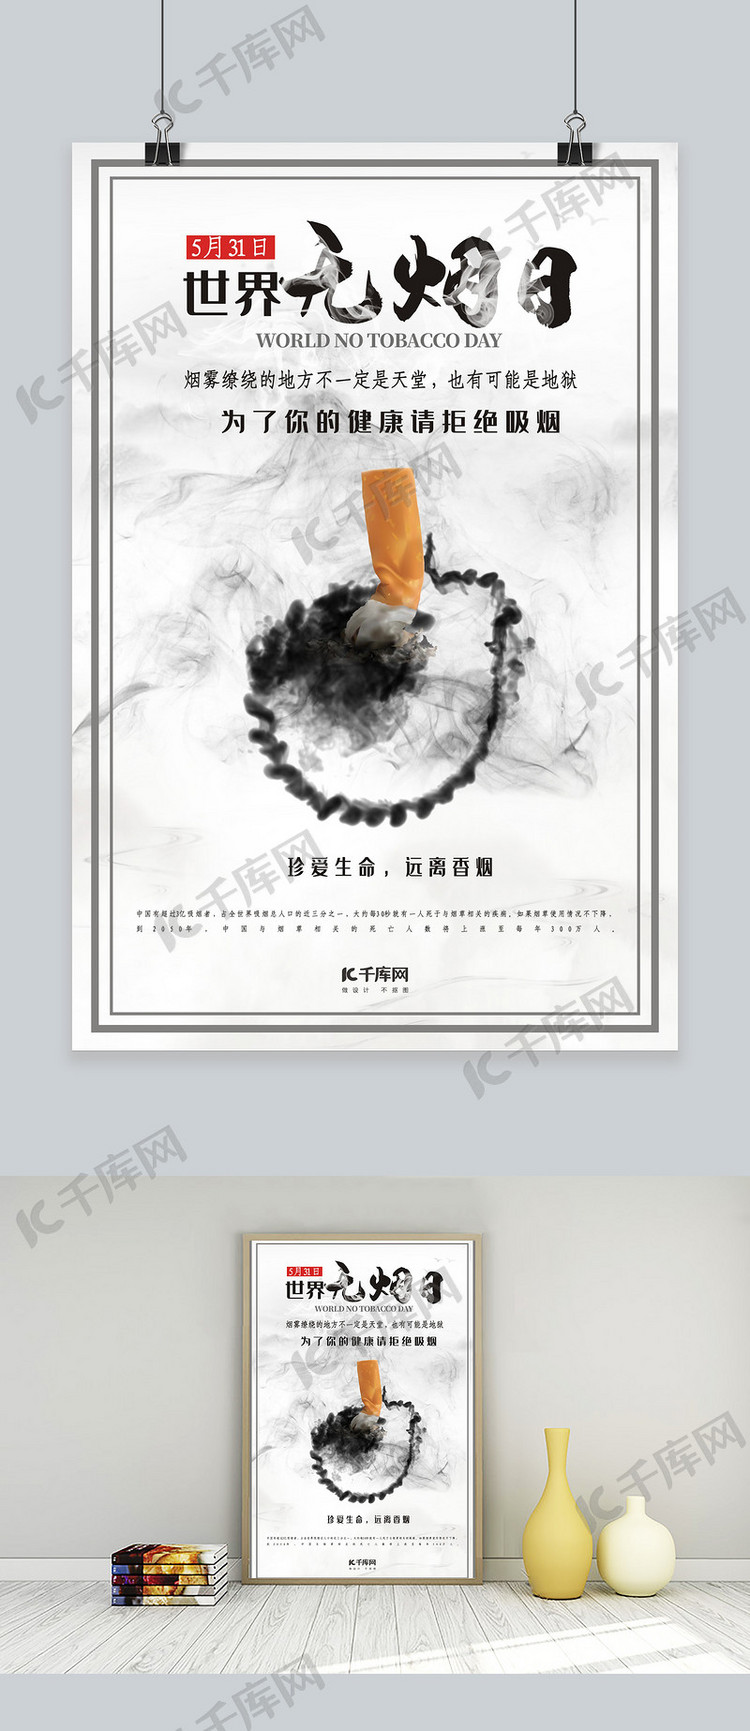 世界无烟日禁止吸烟吸烟有害健康中国风禁烟公益海报